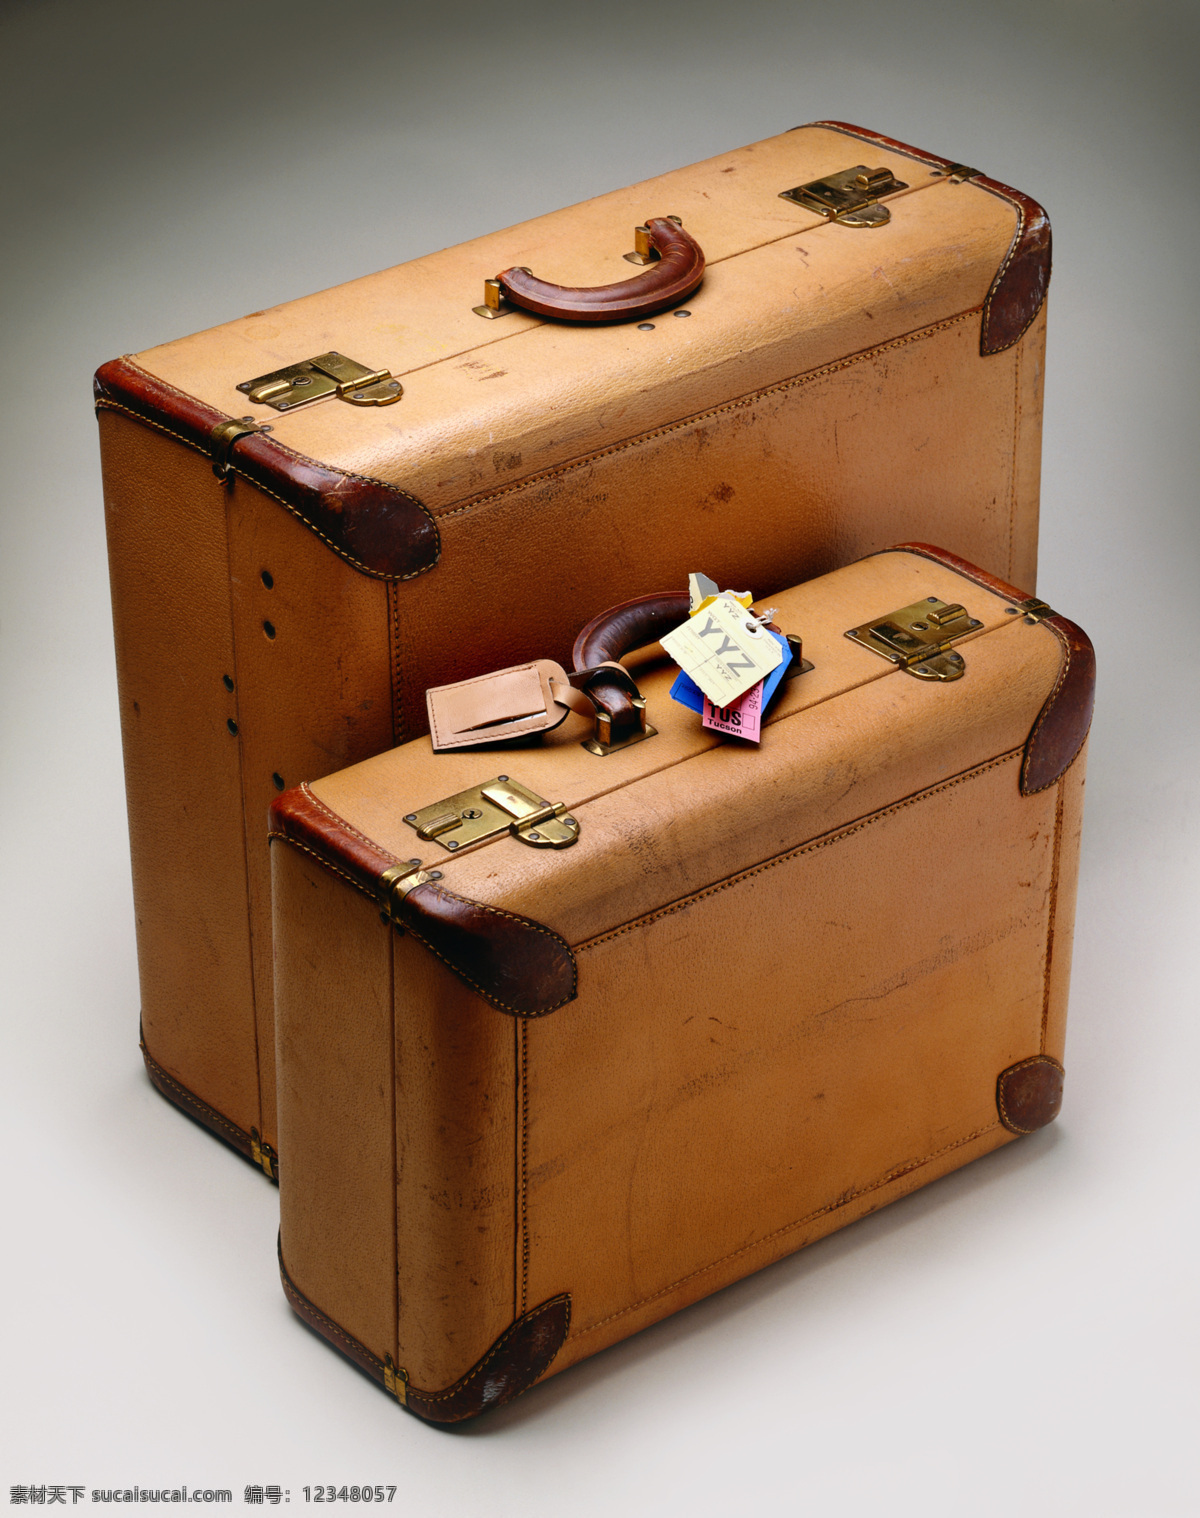 不 同型号 旅行箱 型号 标签 行李箱 箱子 其他类别 生活百科 灰色